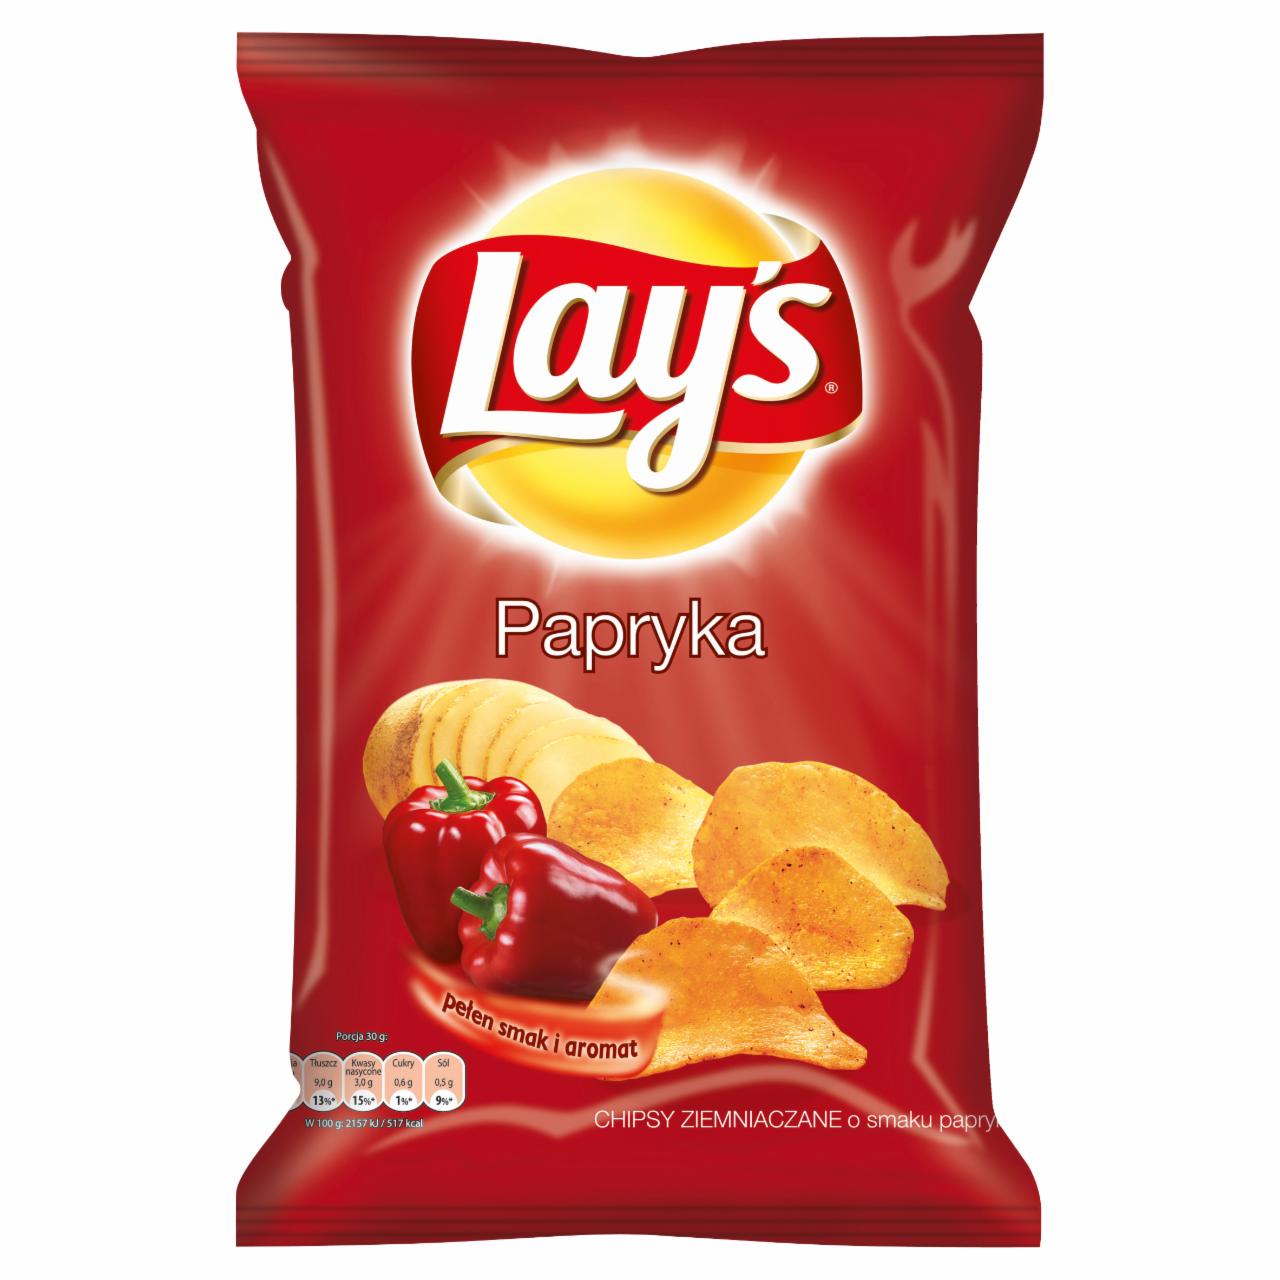 Zdjęcia - Lay's Papryka Chipsy ziemniaczane 80 g